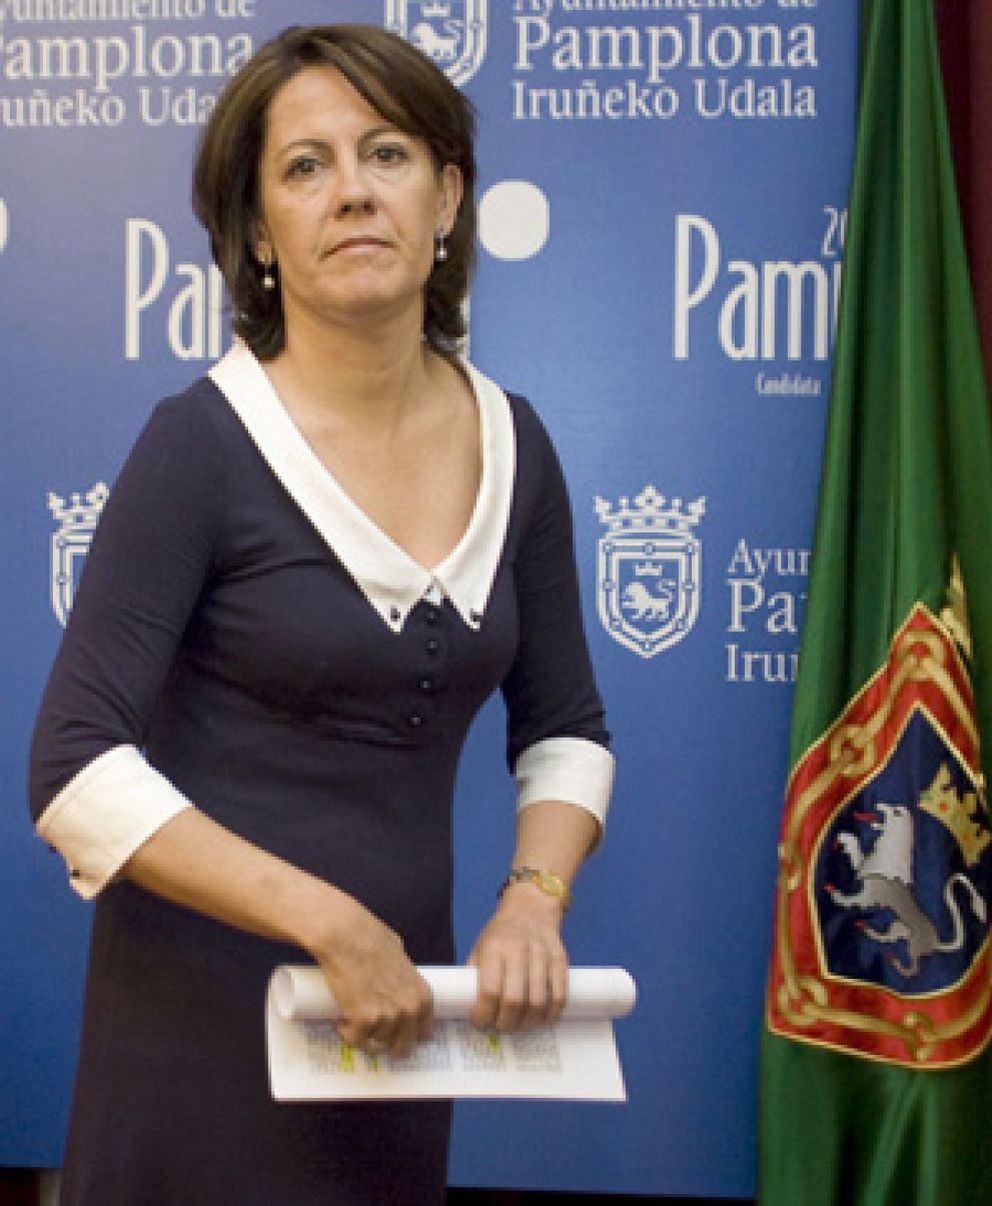 Foto: La alcaldesa de Pamplona pide el divorcio tras aparecer su marido en un programa de Antena 3